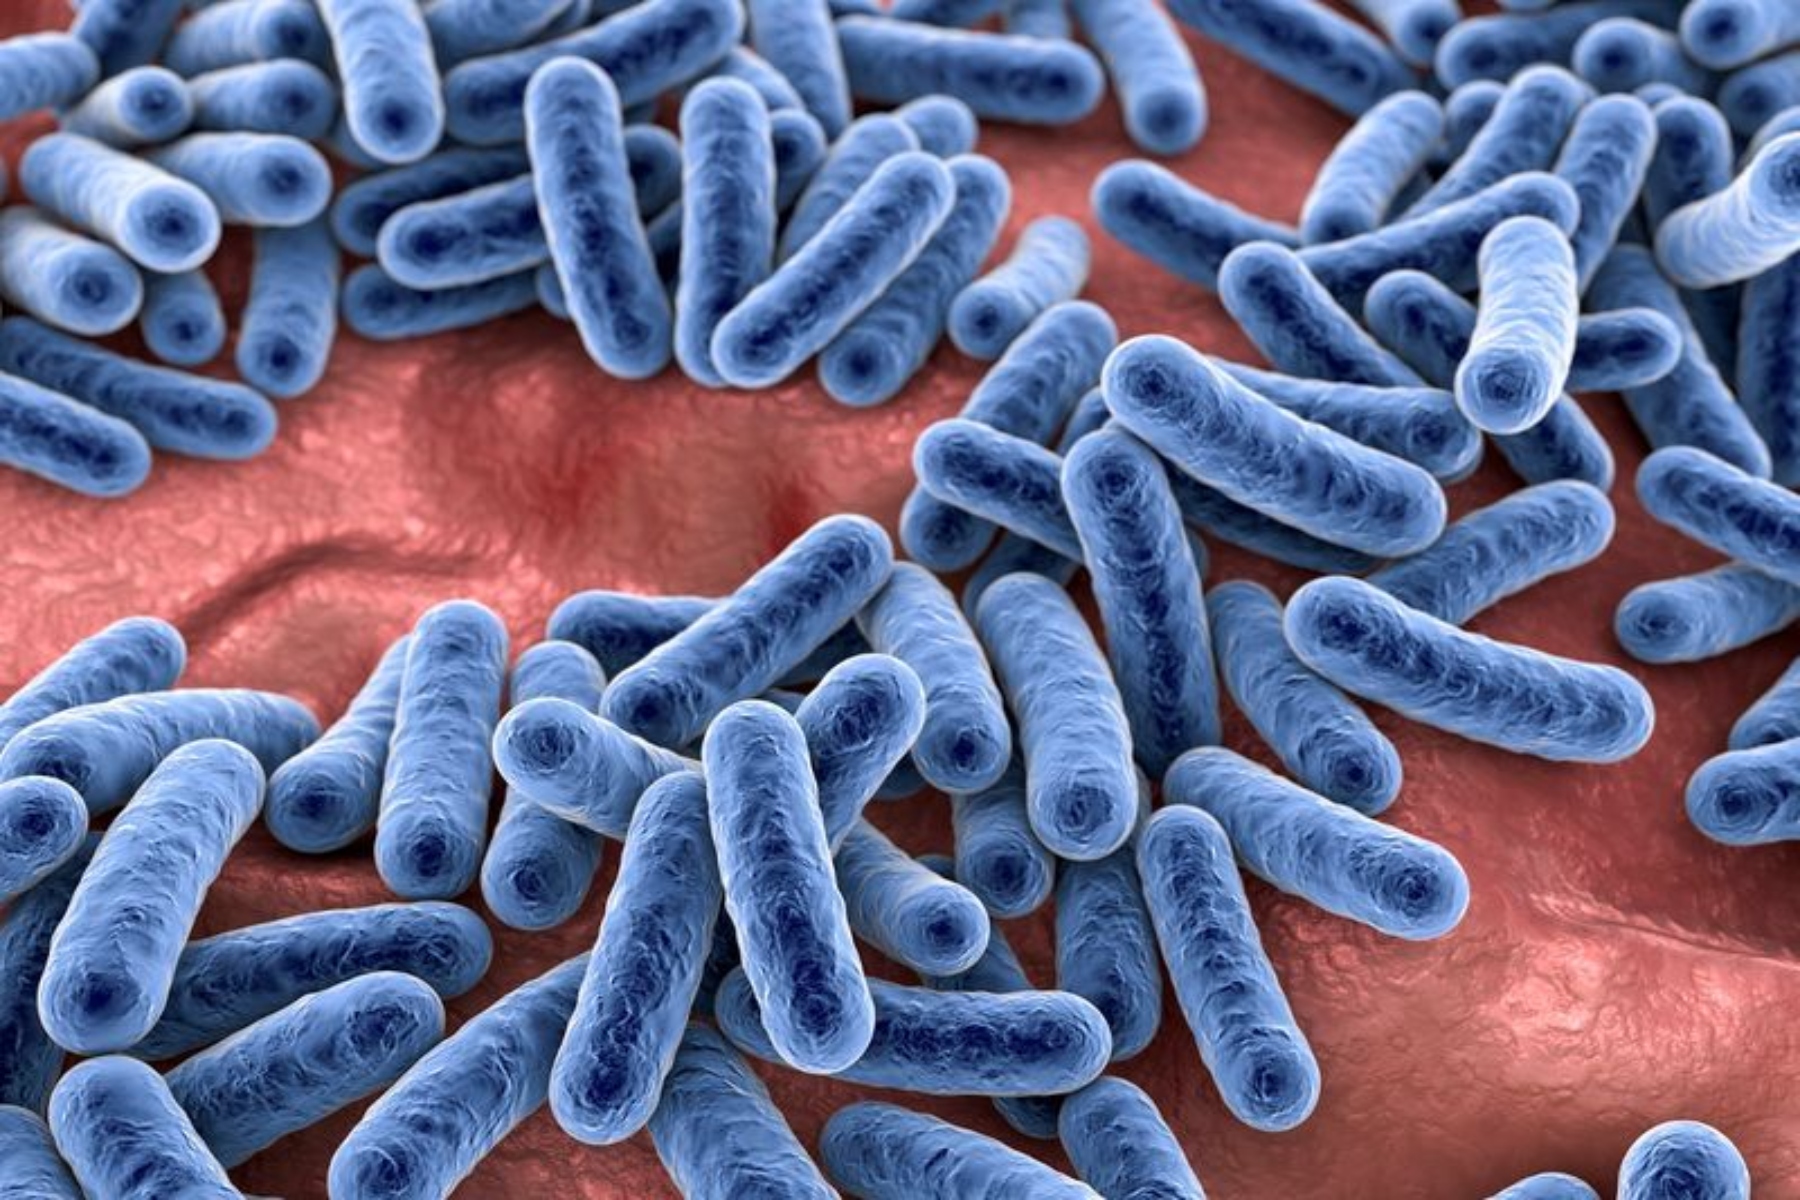 Μικροβίωμα: Ο ρόλος των επιβλαβών βακτηρίων του εντέρου στον πυρετό ασθενών με καρκίνο